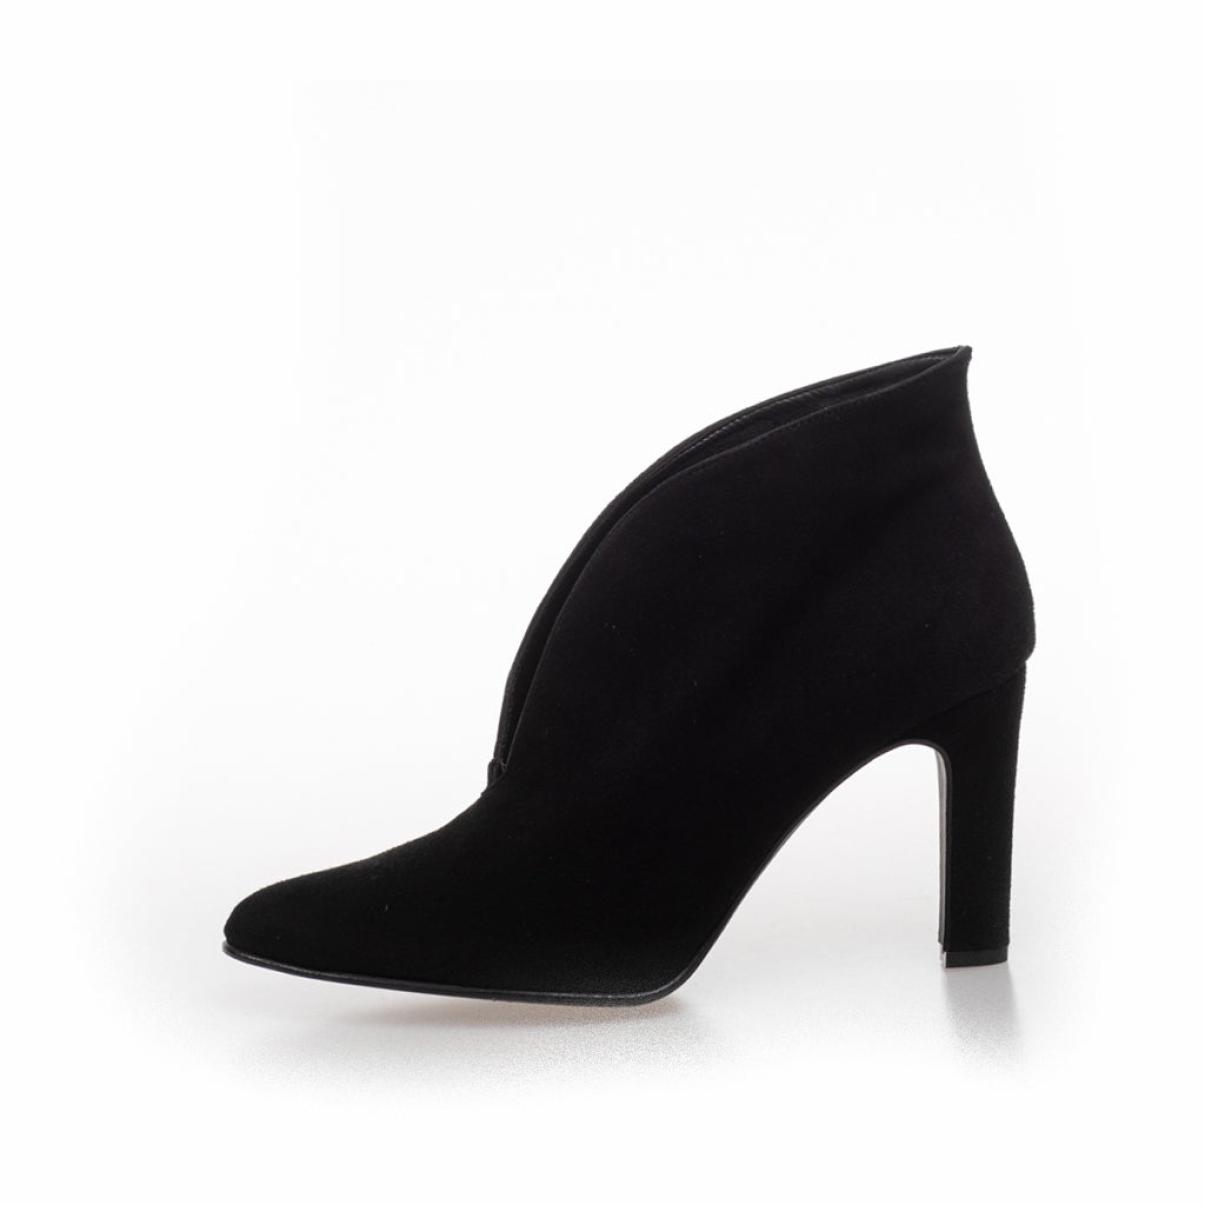 Functional Copenhagen Shoes Sus 21 - Black Women Ankle Boots